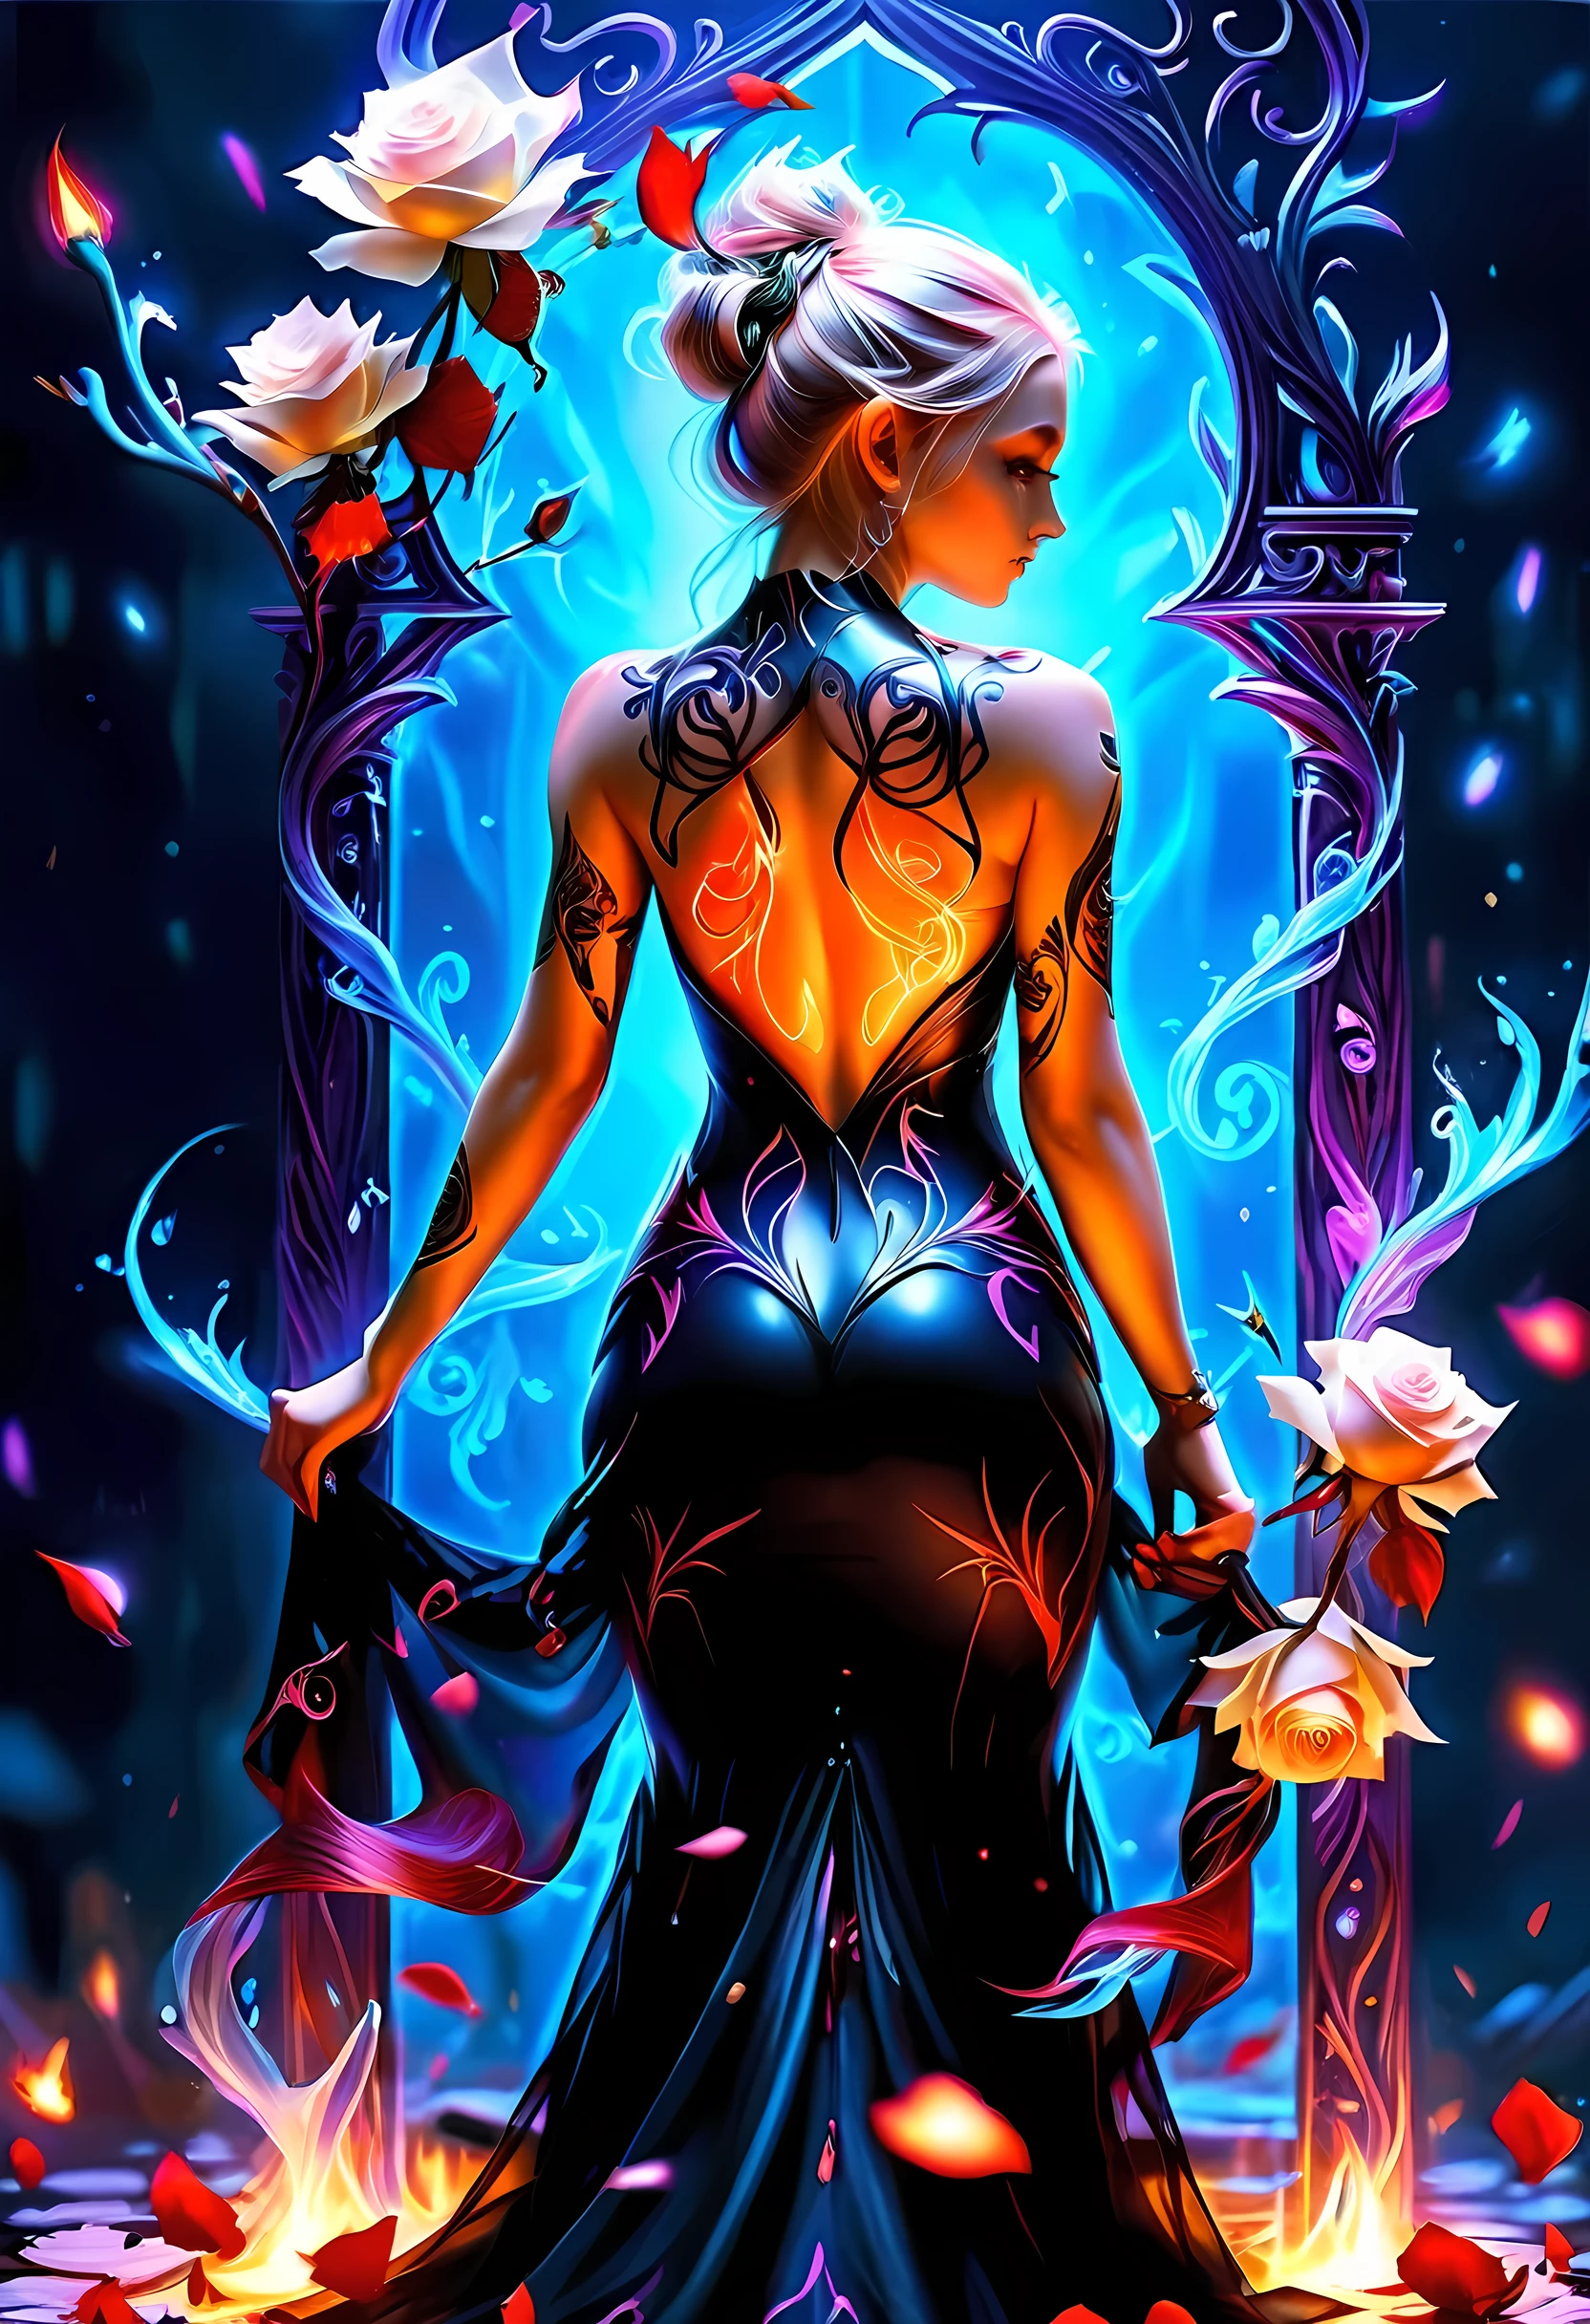 Arafed, Dark arte de fantasia, arte de fantasia, arte gótica, a picture of a tattoo on o back of a female elf, uma tatuagem brilhante de um ((Rosa Branca: 1.3)) on o elf's back, o ((Tatuagem Rosa)) is vivid, intricate detailed coming to life from o ink to real life, GlowingRunesAI_roxo, ((fire surrounds o rose petals: 1.5)), shot taken from o back, ((o back is visible: 1.3), ela usa um vestido preto transparente, costas nuas, o dress is elegant, fluindo, Estilo élfico, that o (Tatuagens brilham: 1.1), cor de cabelo dinâmica, estilo de cabelo dinâmico, faize,rosas, aposta
